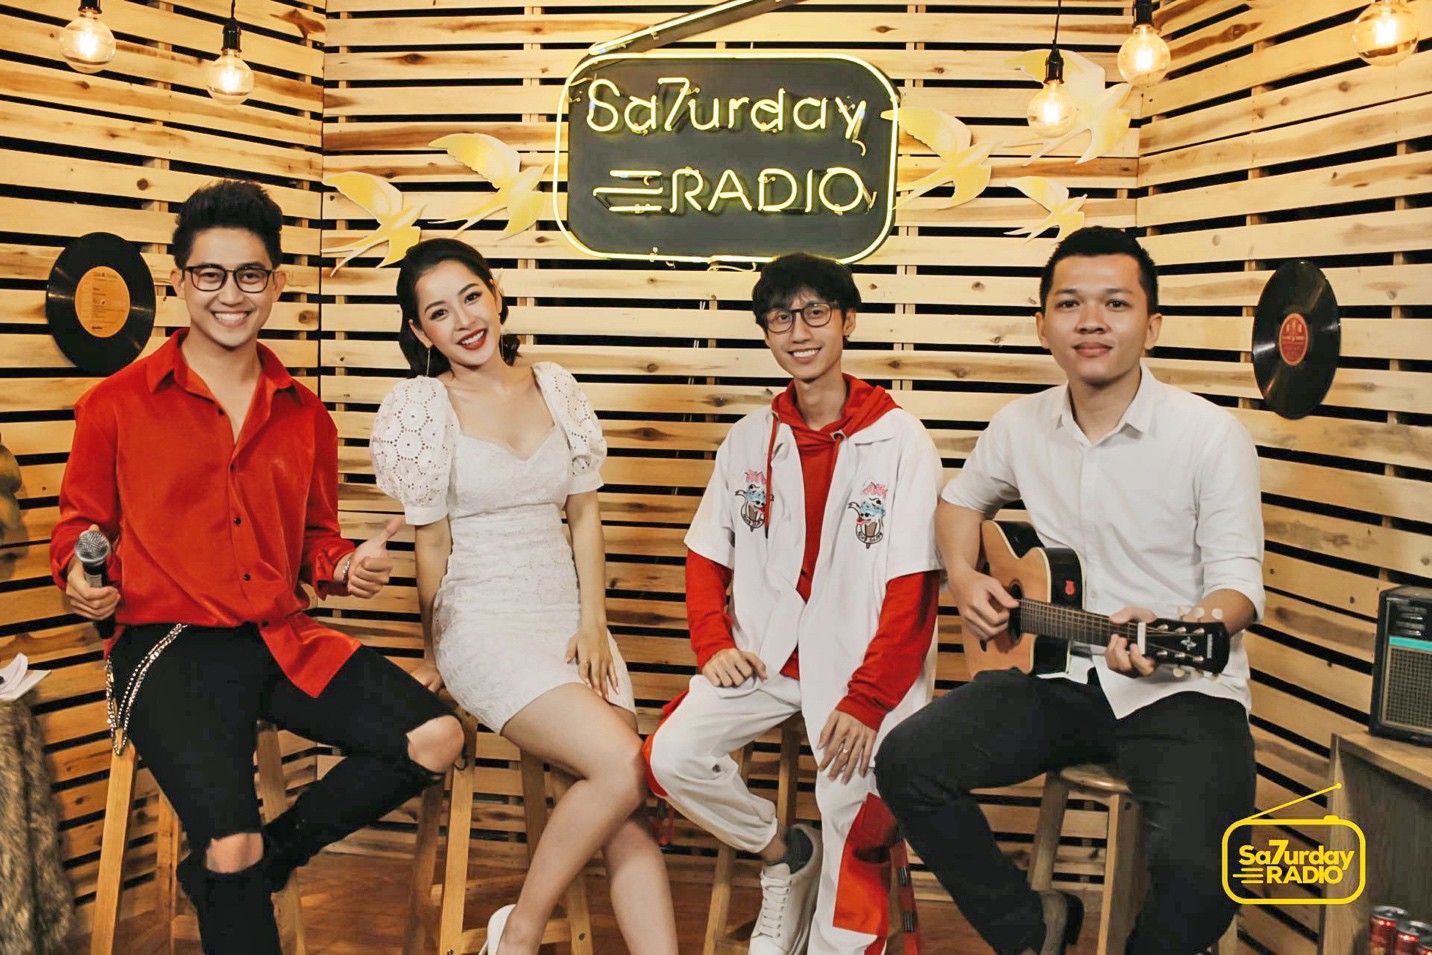 Saturday Radio: Chi Pu lên sóng “xóa tan” những hoài nghi khi kết hợp với Đen Vâu, Lynk Lee - Ảnh 1.